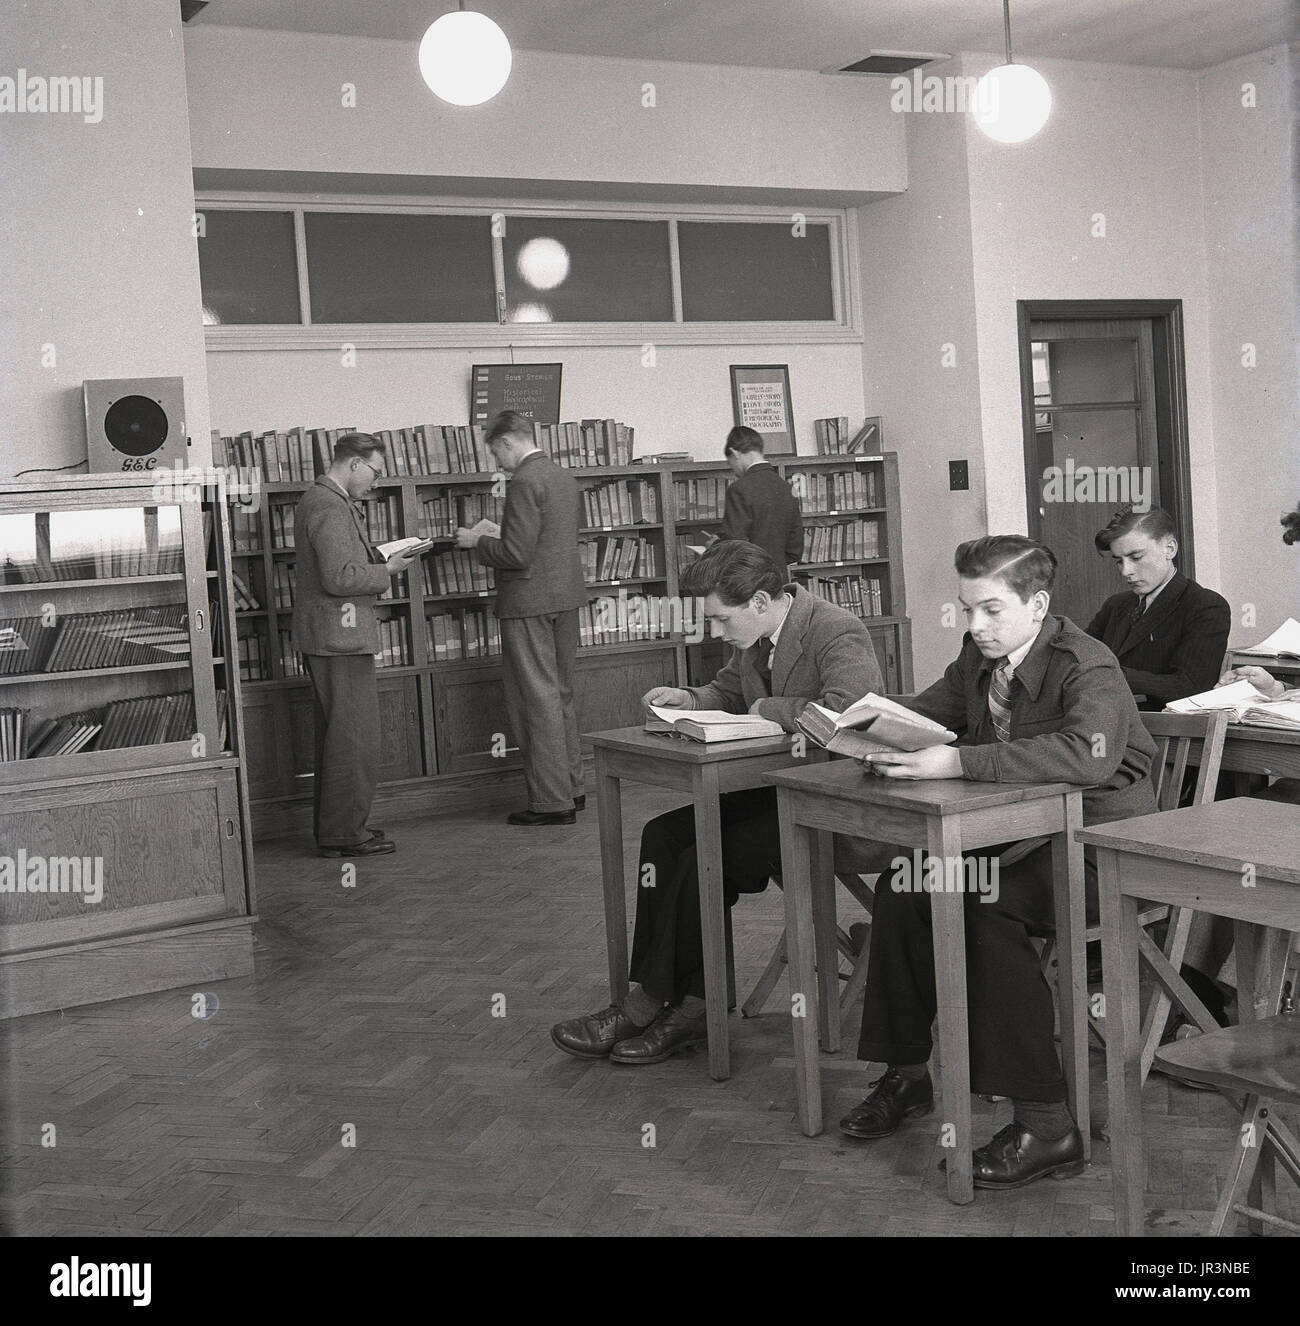 1948, storico, maschio gli studenti che frequentano un inglese technical college per studiare i libri di testo nella sala lettura, Inghilterra, Regno Unito. Foto Stock